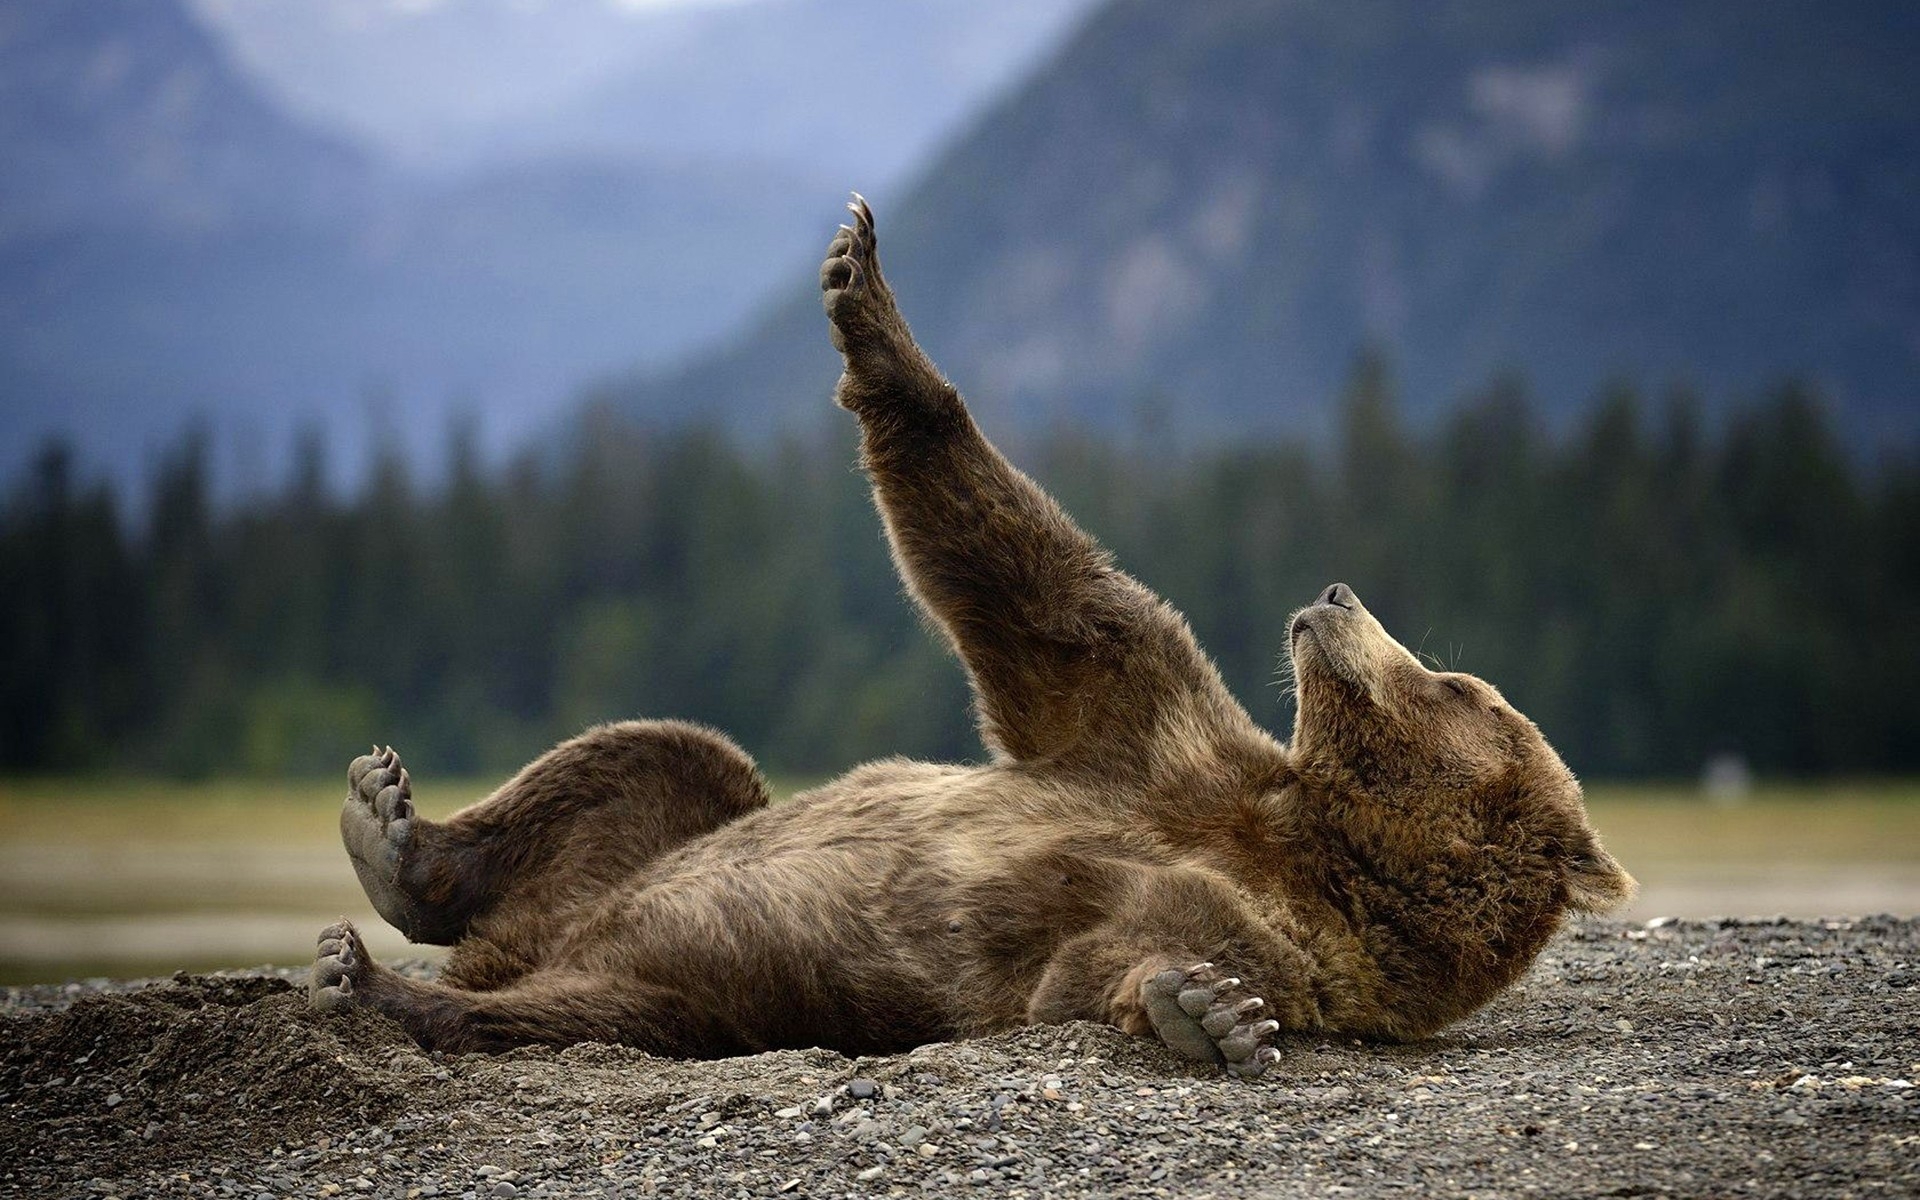 Скачать обои бесплатно Животные, Медведи, Медведь, Милые картинка на рабочий стол ПК